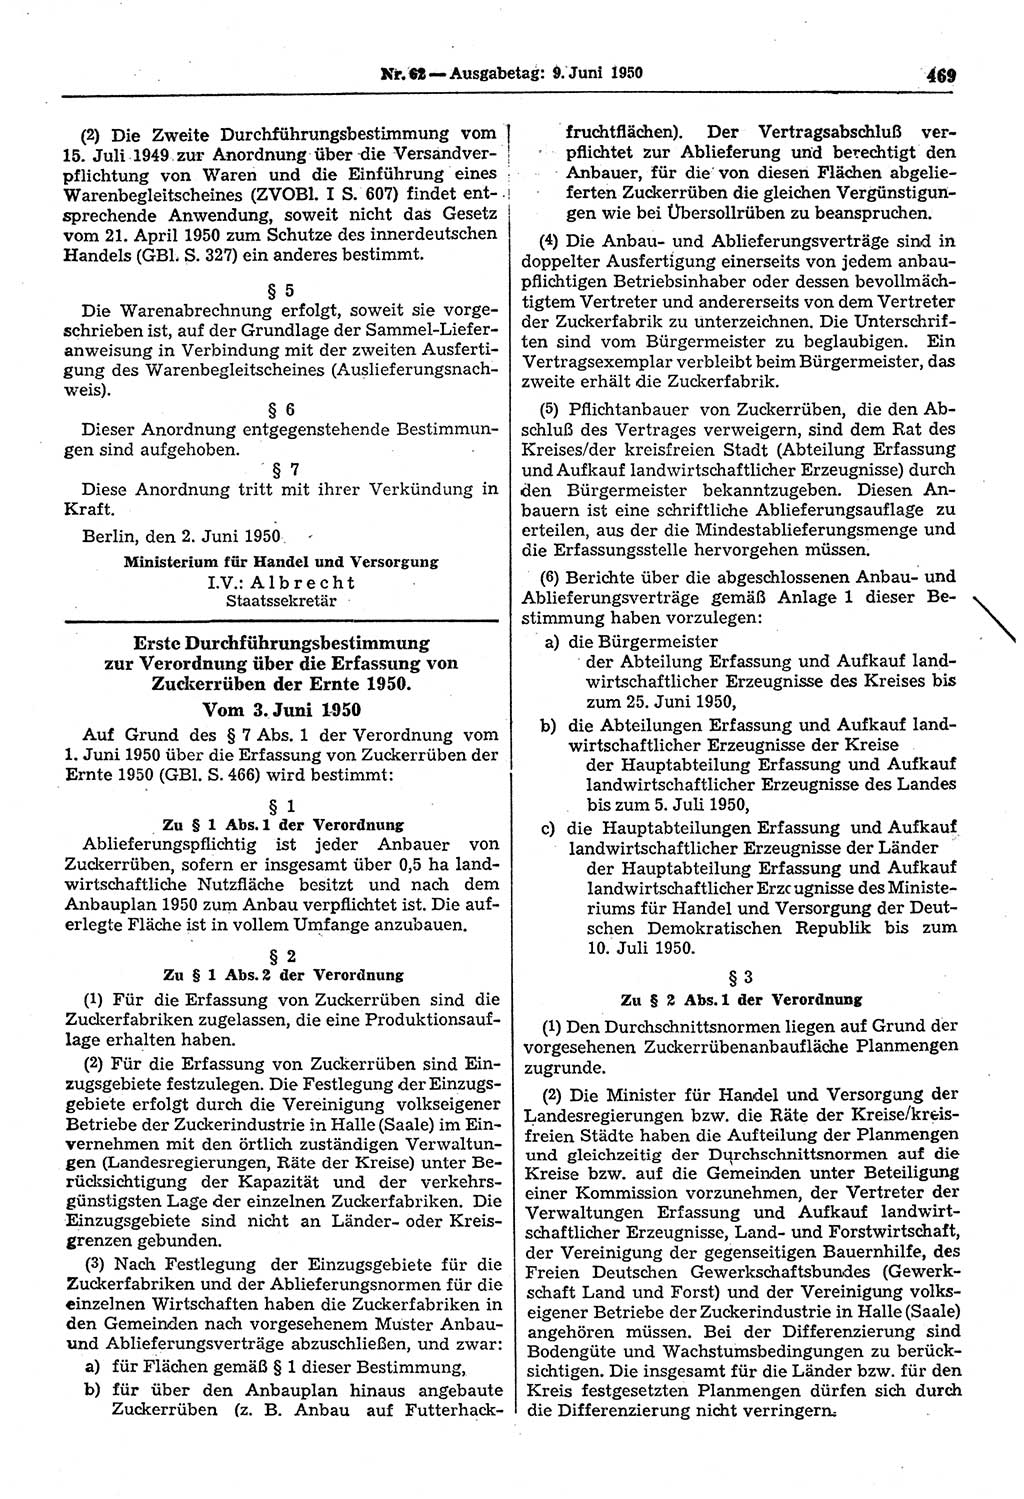 Gesetzblatt (GBl.) der Deutschen Demokratischen Republik (DDR) 1950, Seite 469 (GBl. DDR 1950, S. 469)